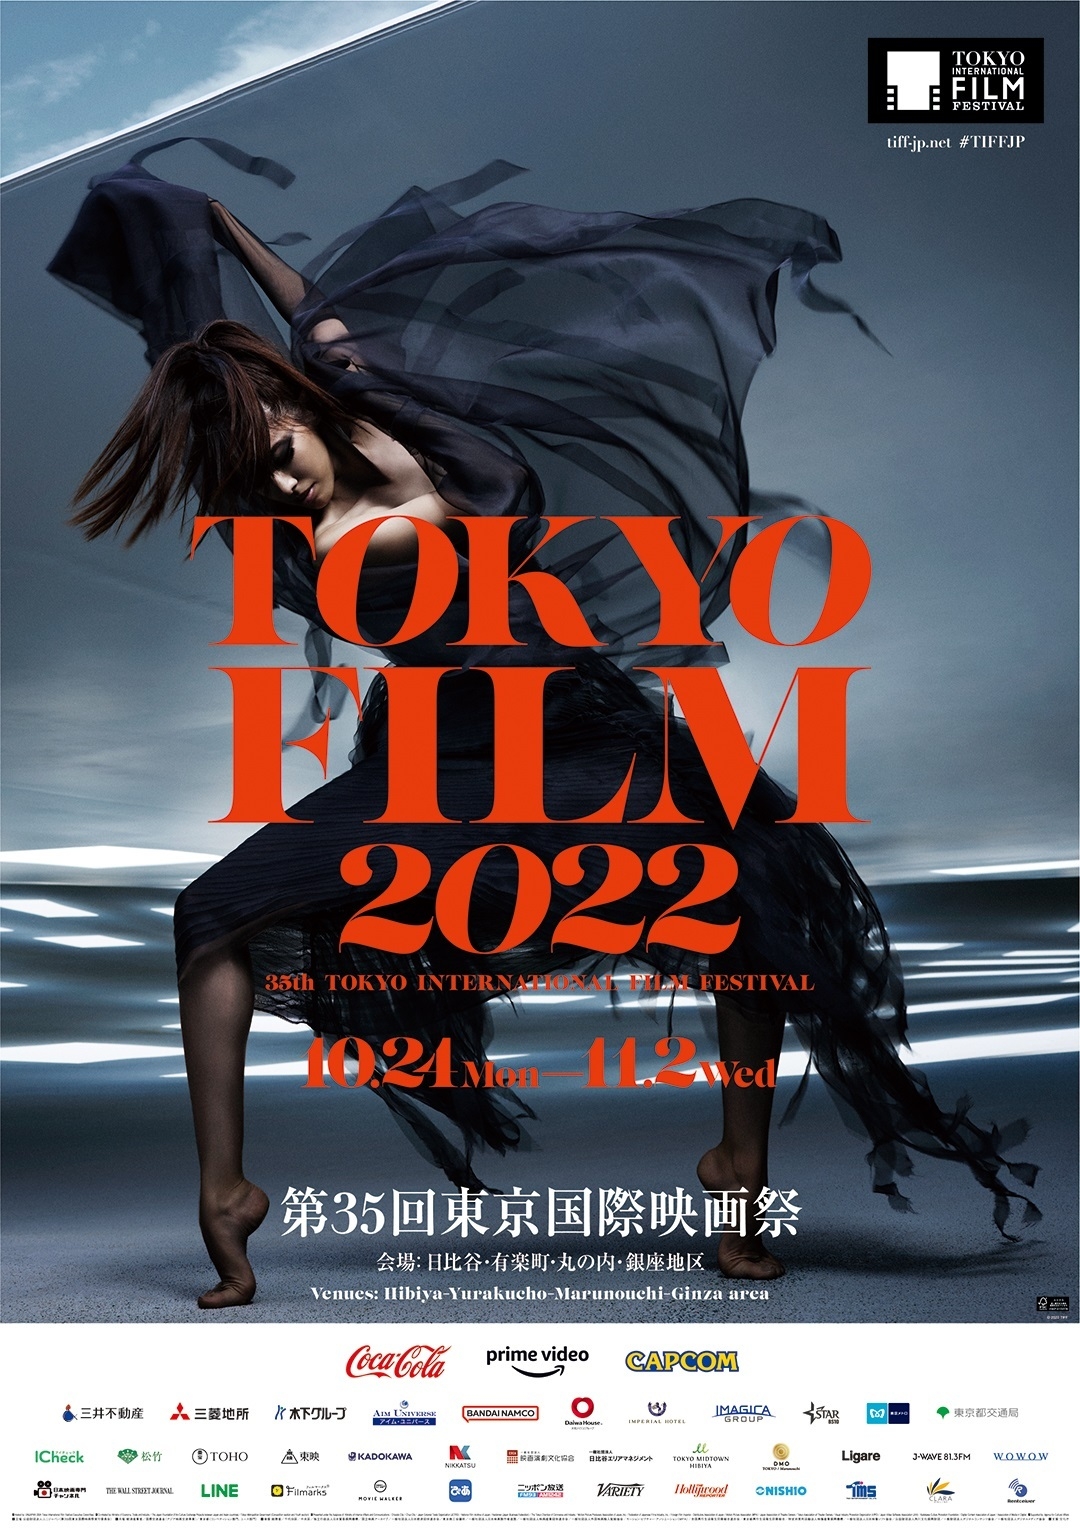 第35回東京国際映画祭は会場拡大 コシノジュンコによる新ポスター 